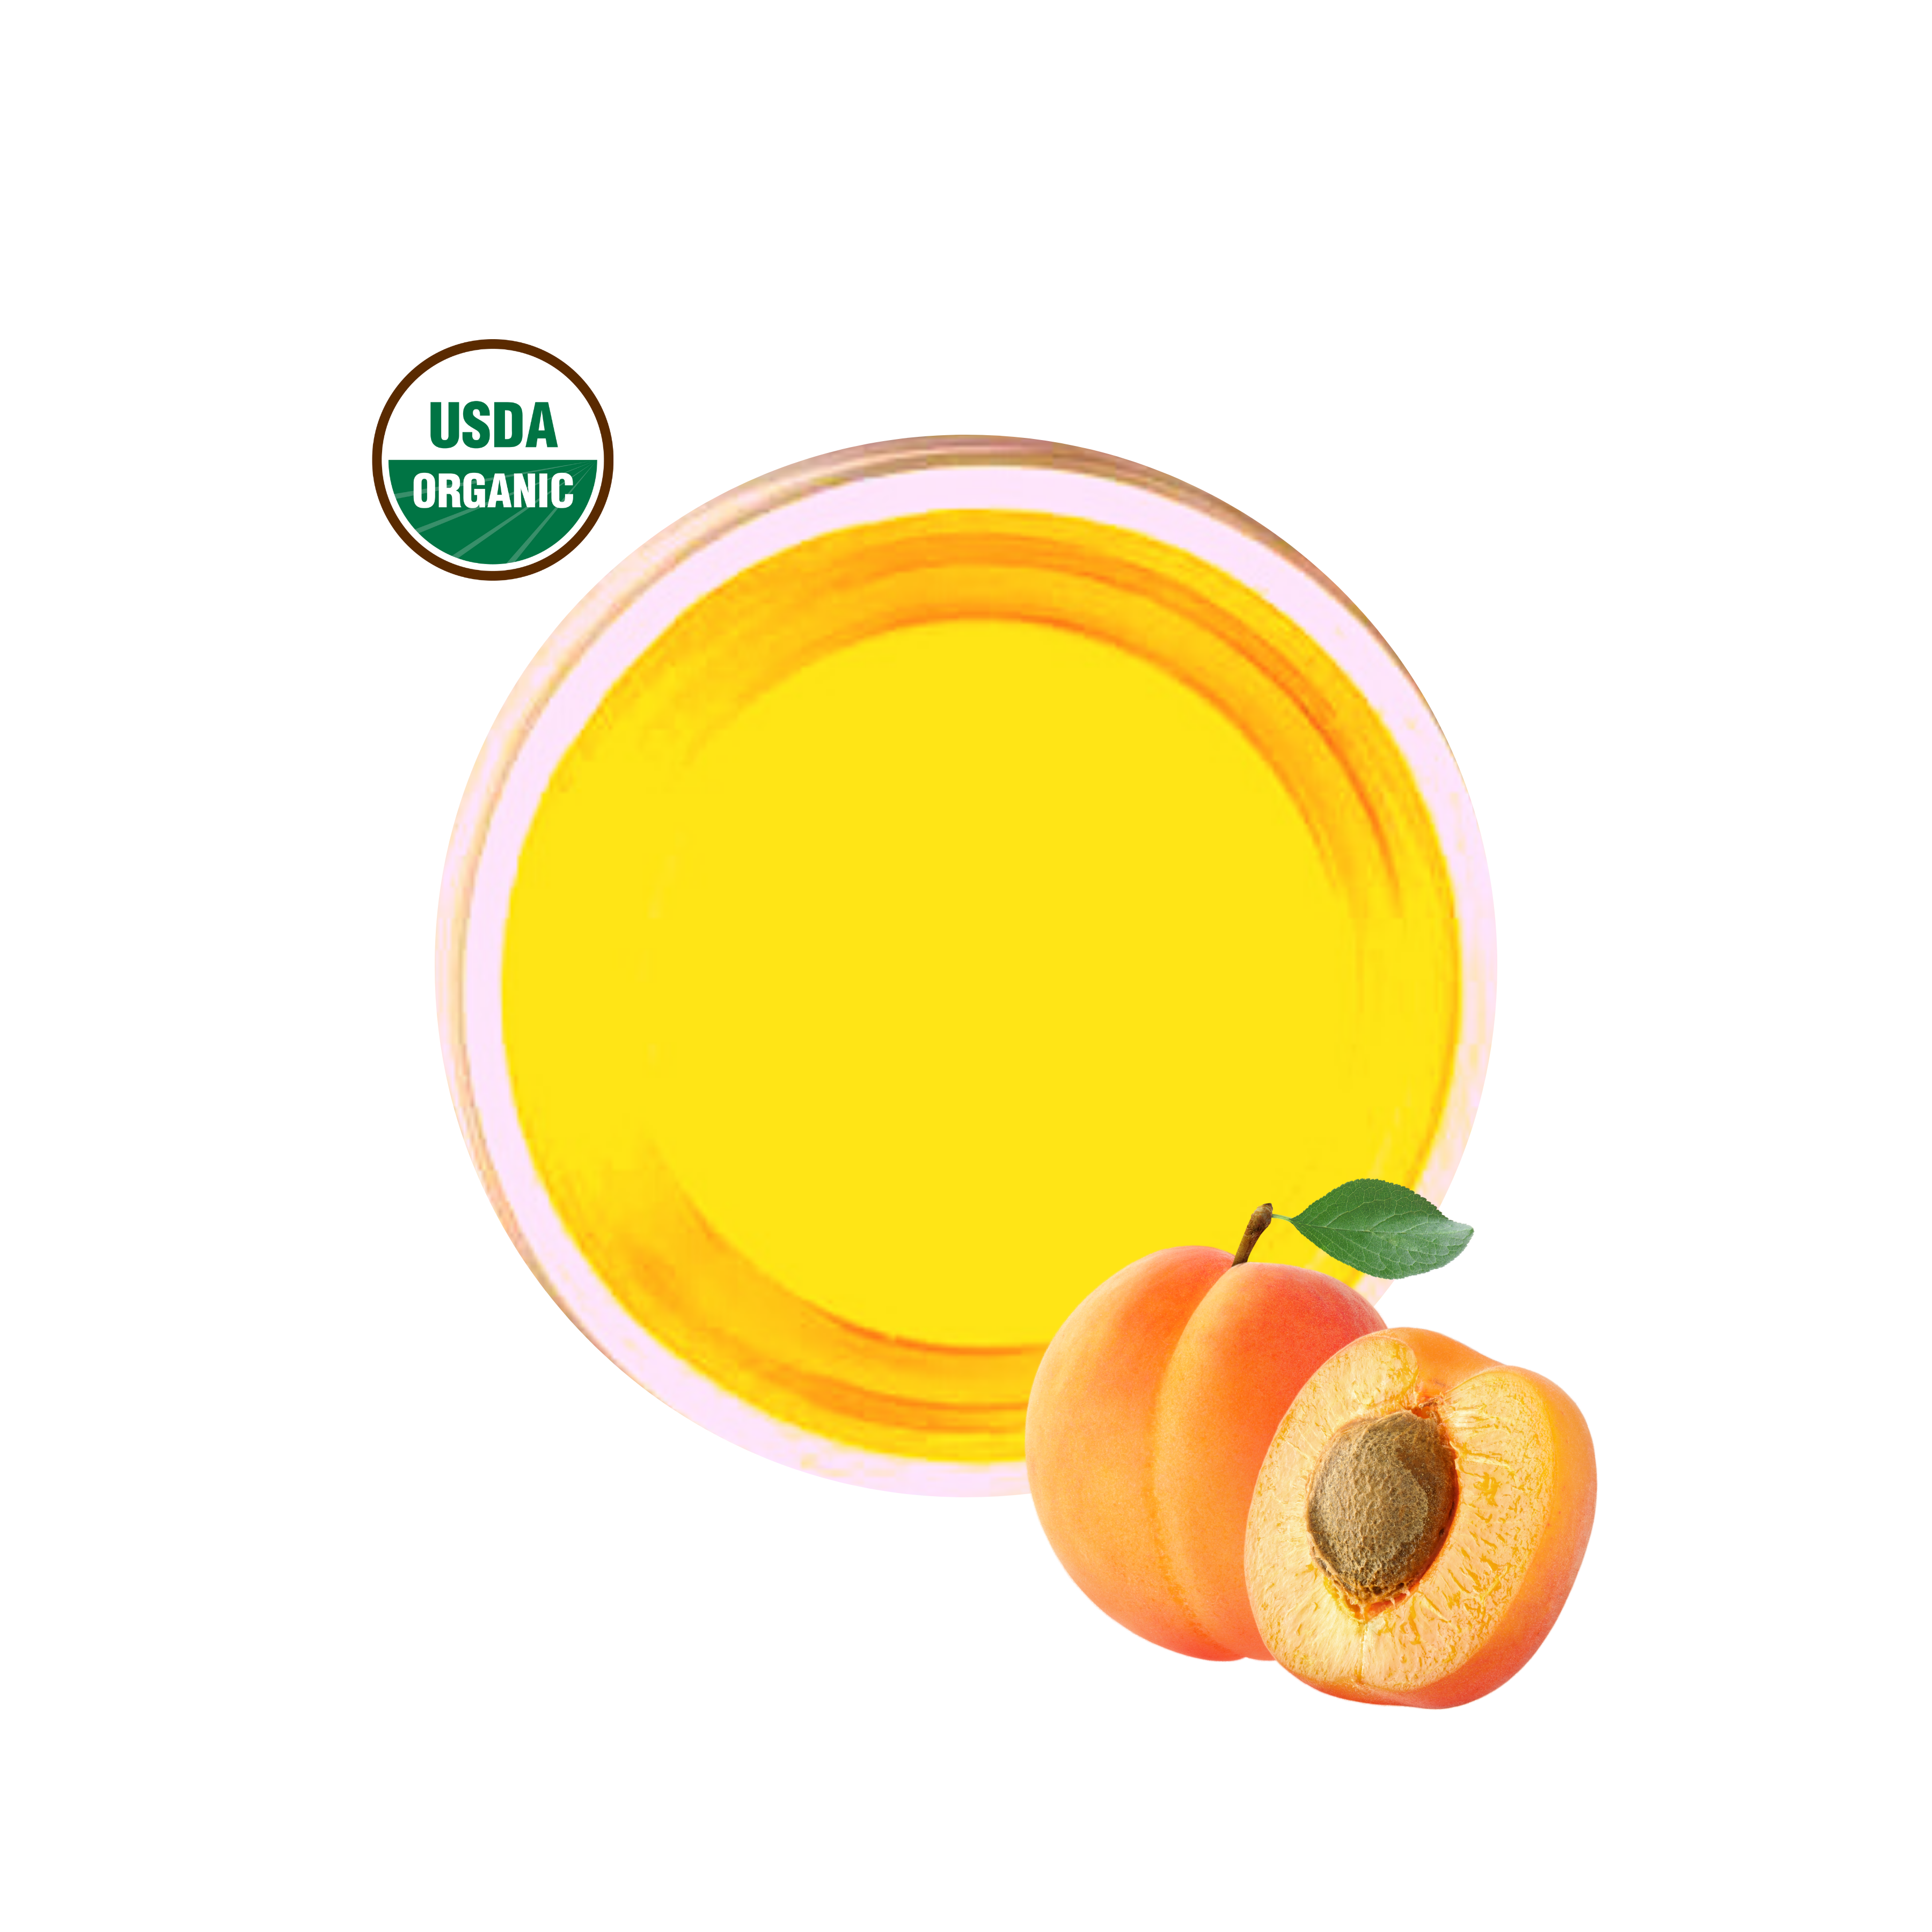 Apricot Kernel Oil Unrefined Organic Virgin Cold Pressed Raw Natural Pure 8  oz